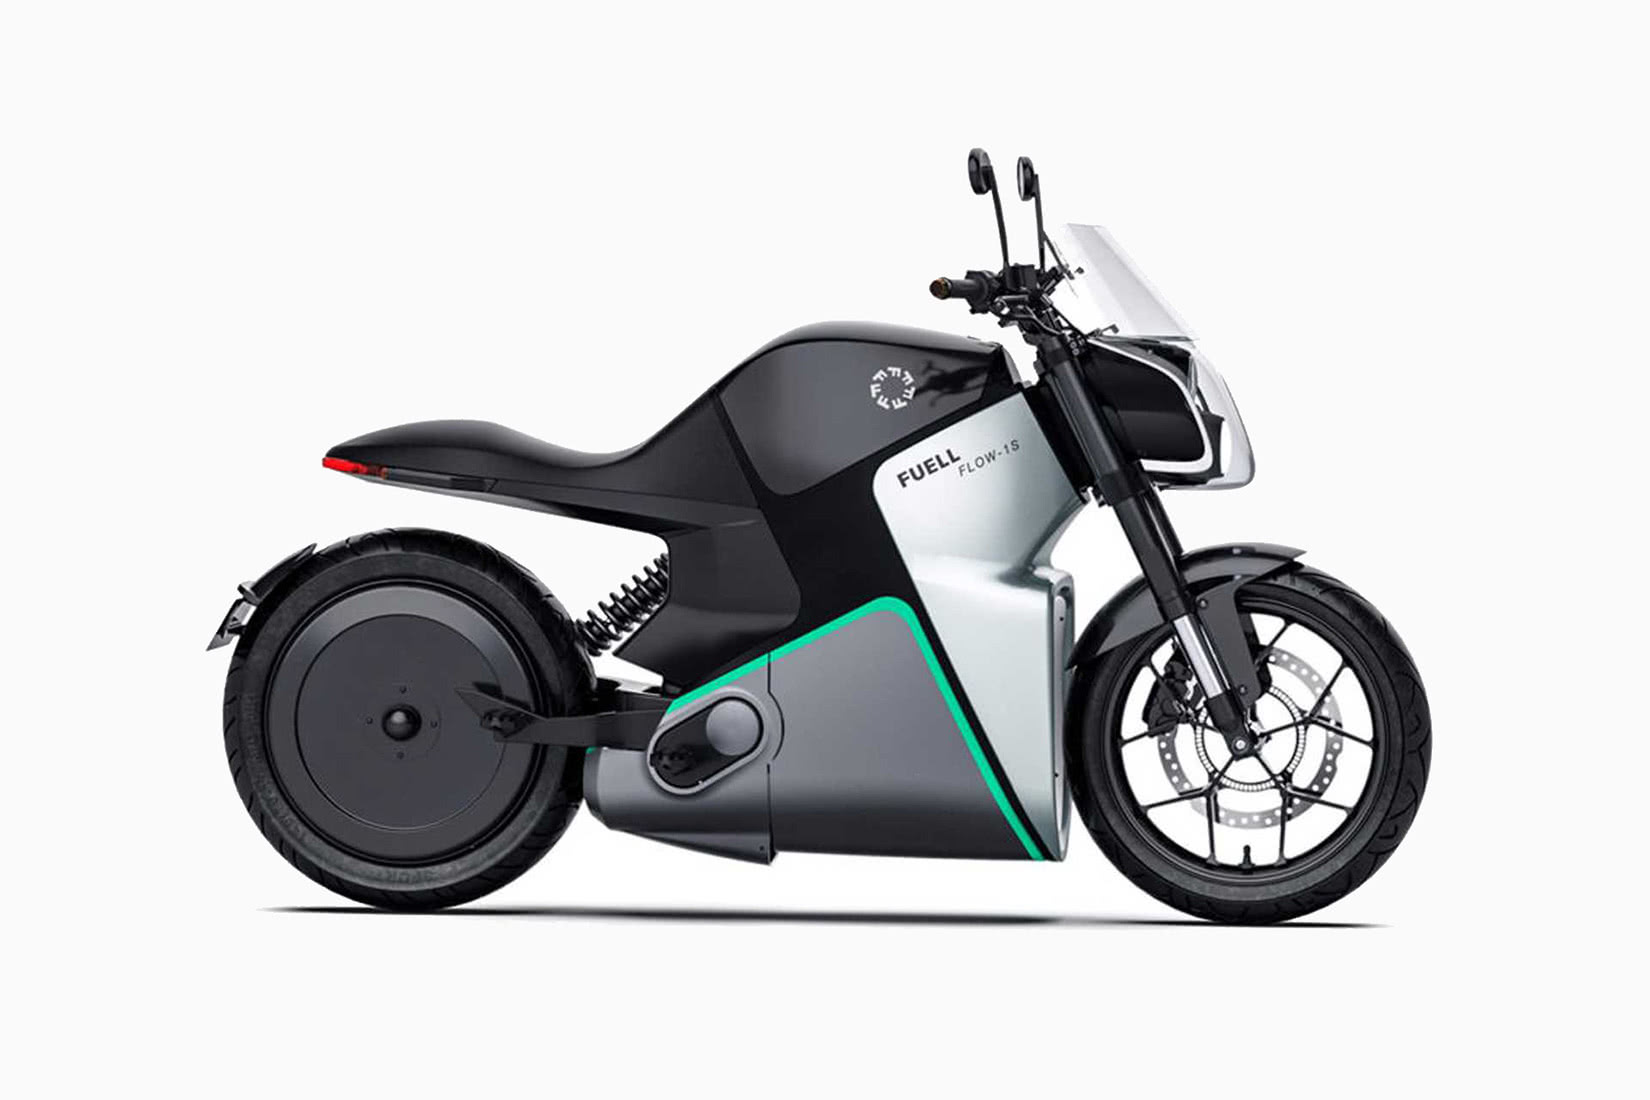 meilleures motos électriques 2021 luxe Fuell Fllow - Luxe Digital